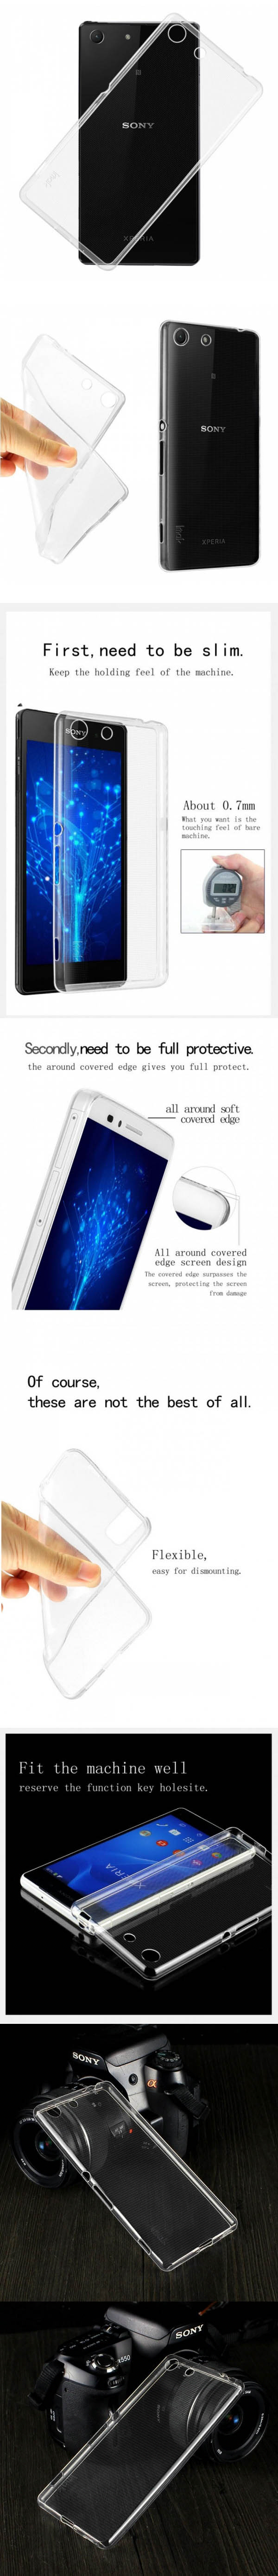 Ốp lưng Sony M5 Dual imak TPU nhựa dẻo trong suốt 3